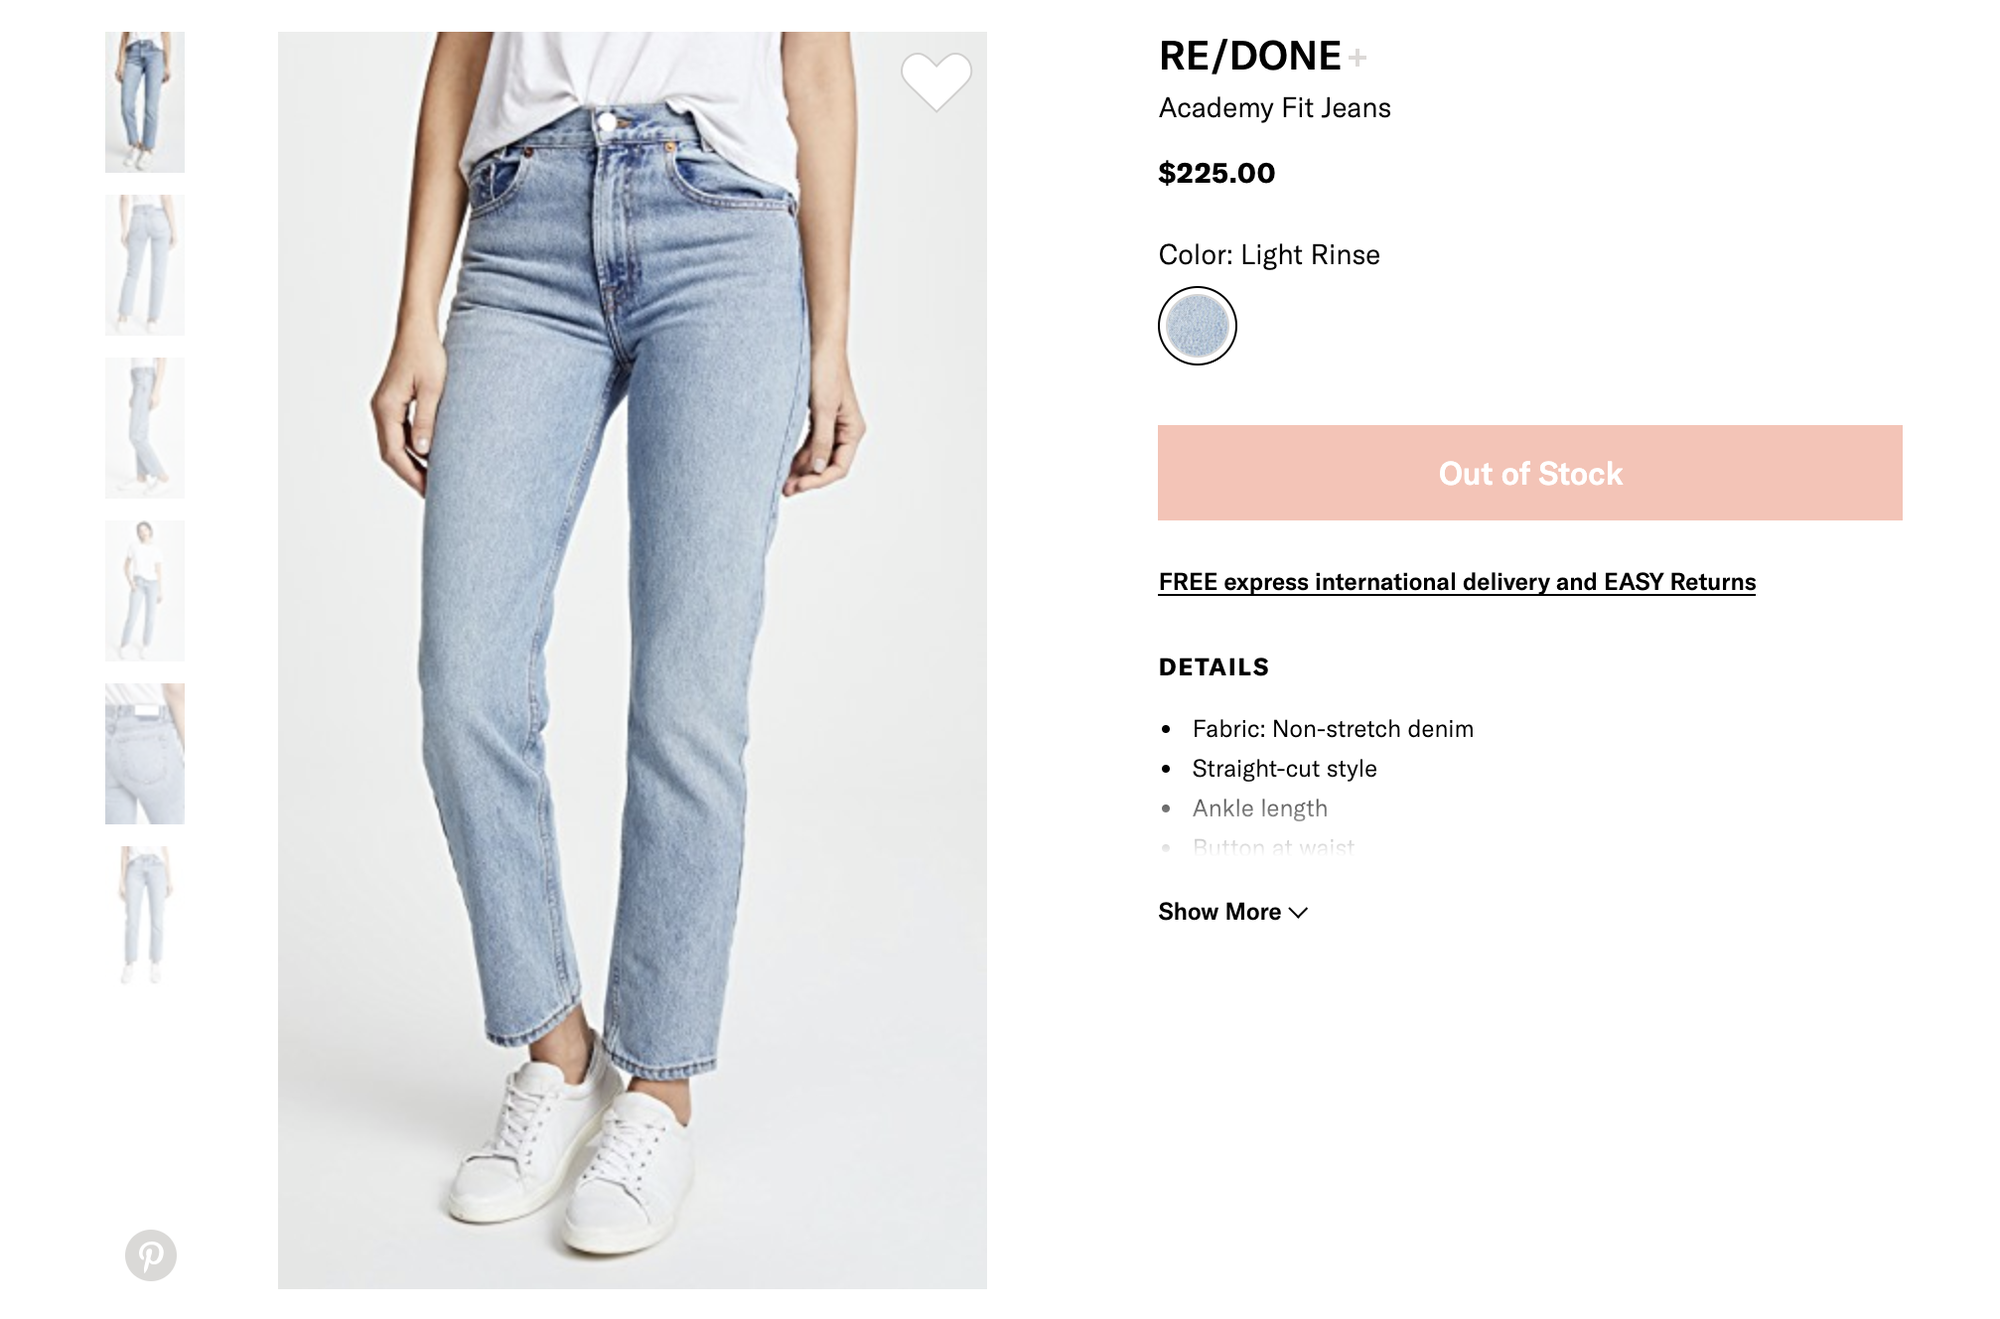 Chiếc quần jeans yêu thích của Jennie đây rồi: Kiểu quần lai cực kỳ nịnh dáng mà bạn sẽ muốn múc ngay 1 chiếc tương tự - Ảnh 1.